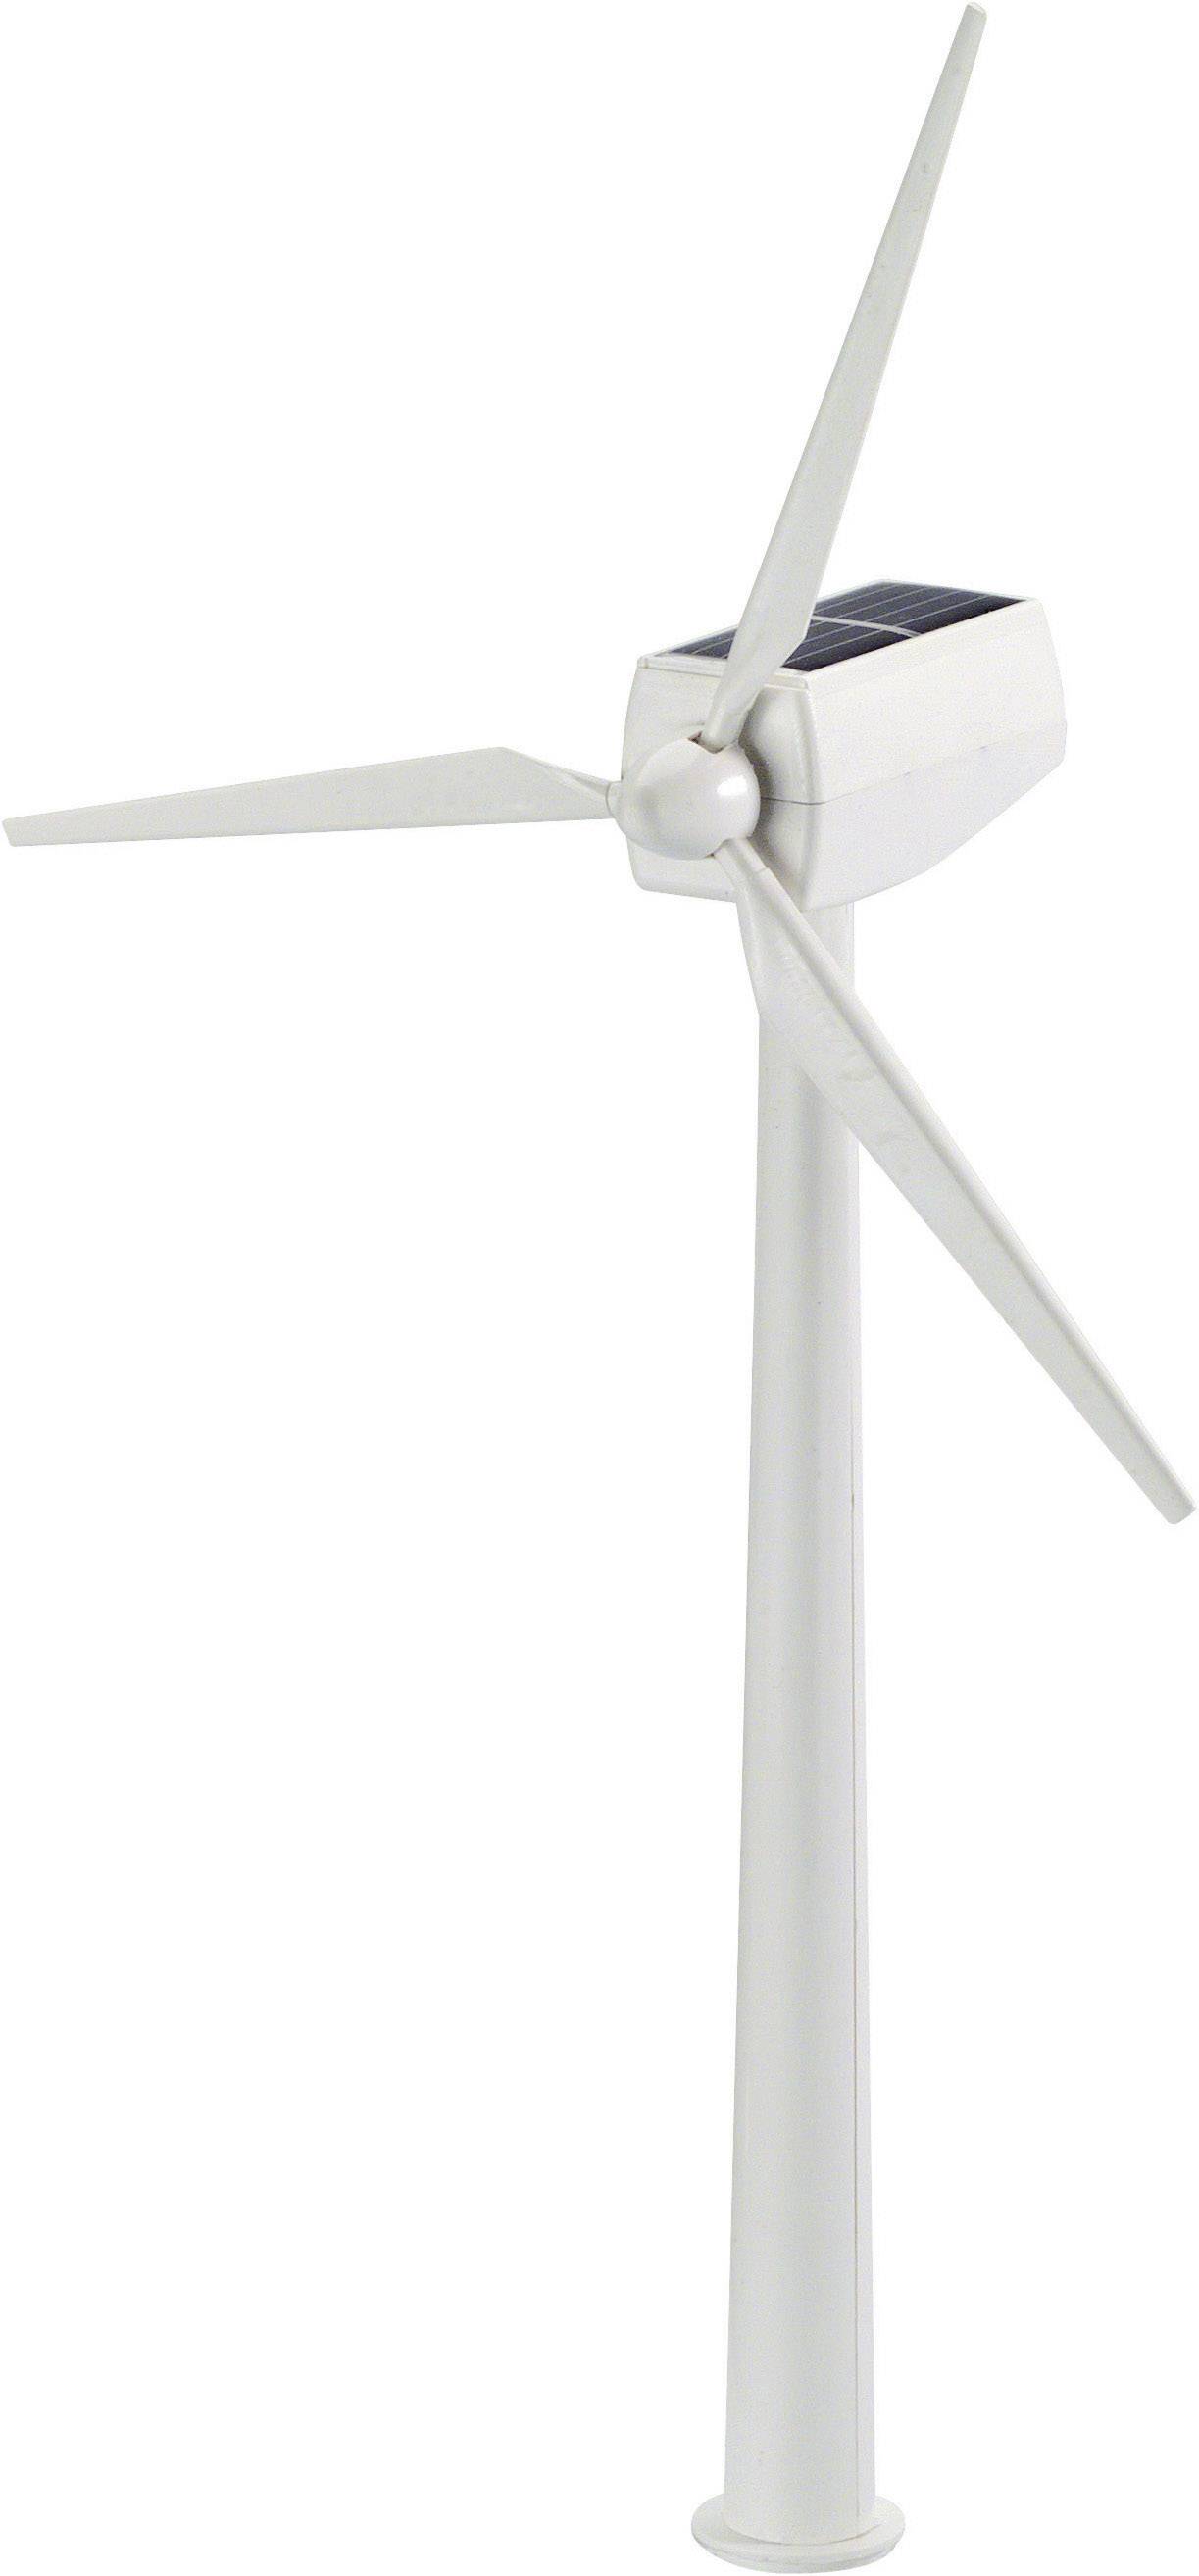 Mini Solarenergie Windmühle Windrad Windkraftanlage Modell Lehrmittel Wohnkultur 